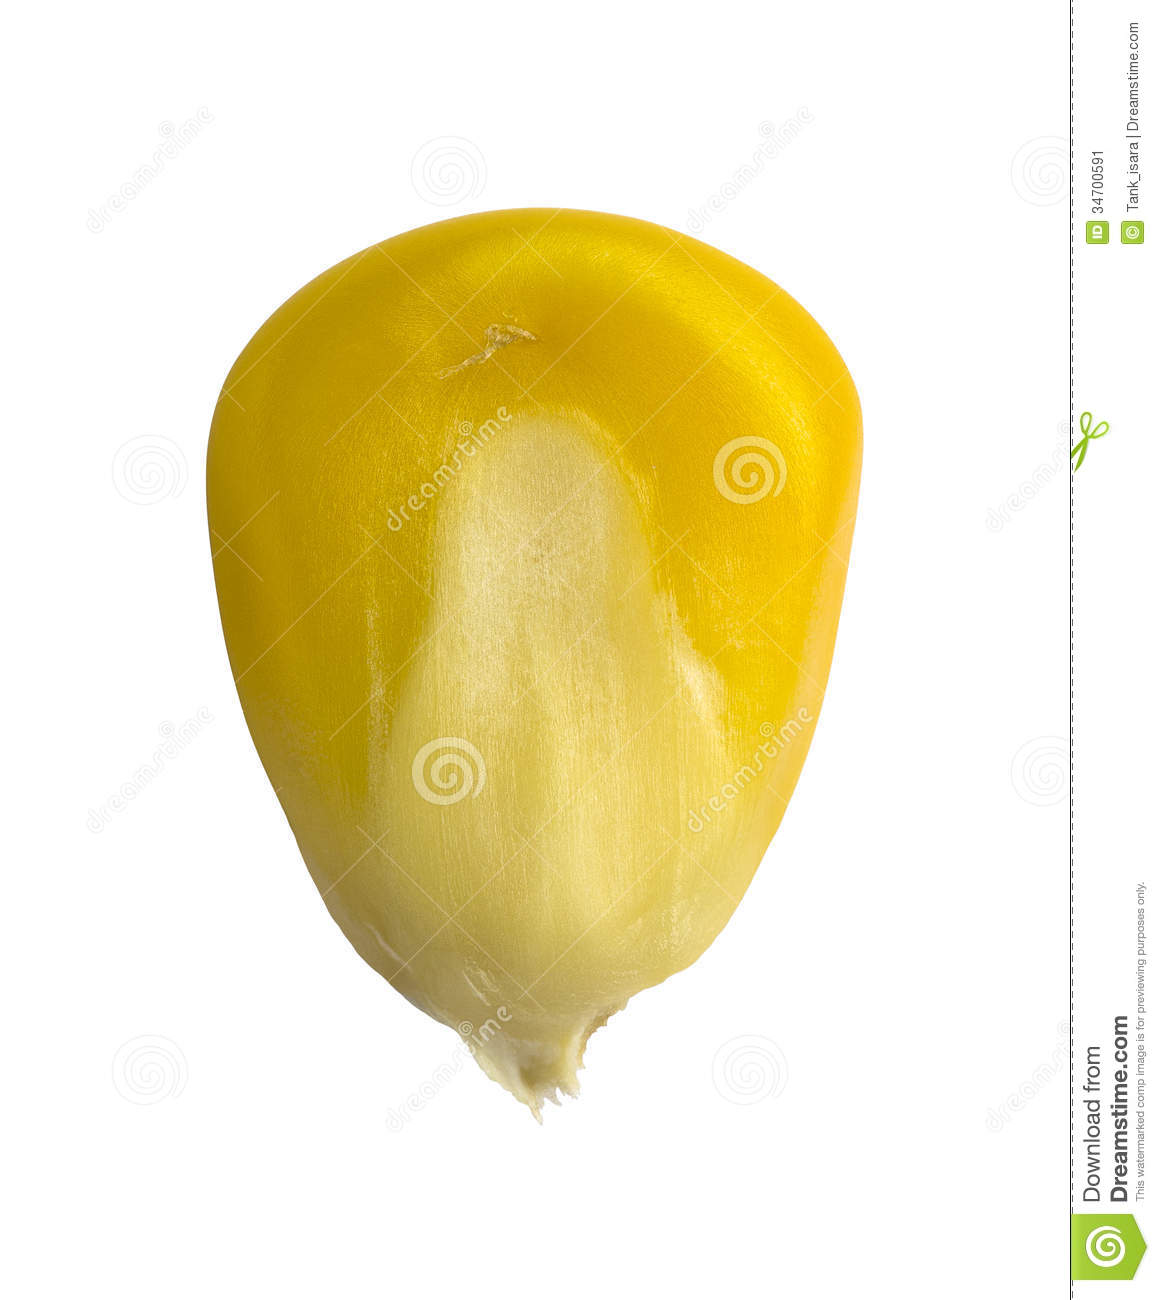 Yellow Corn Seed  Realistic Photo Image   Macro Stock Image   Image    